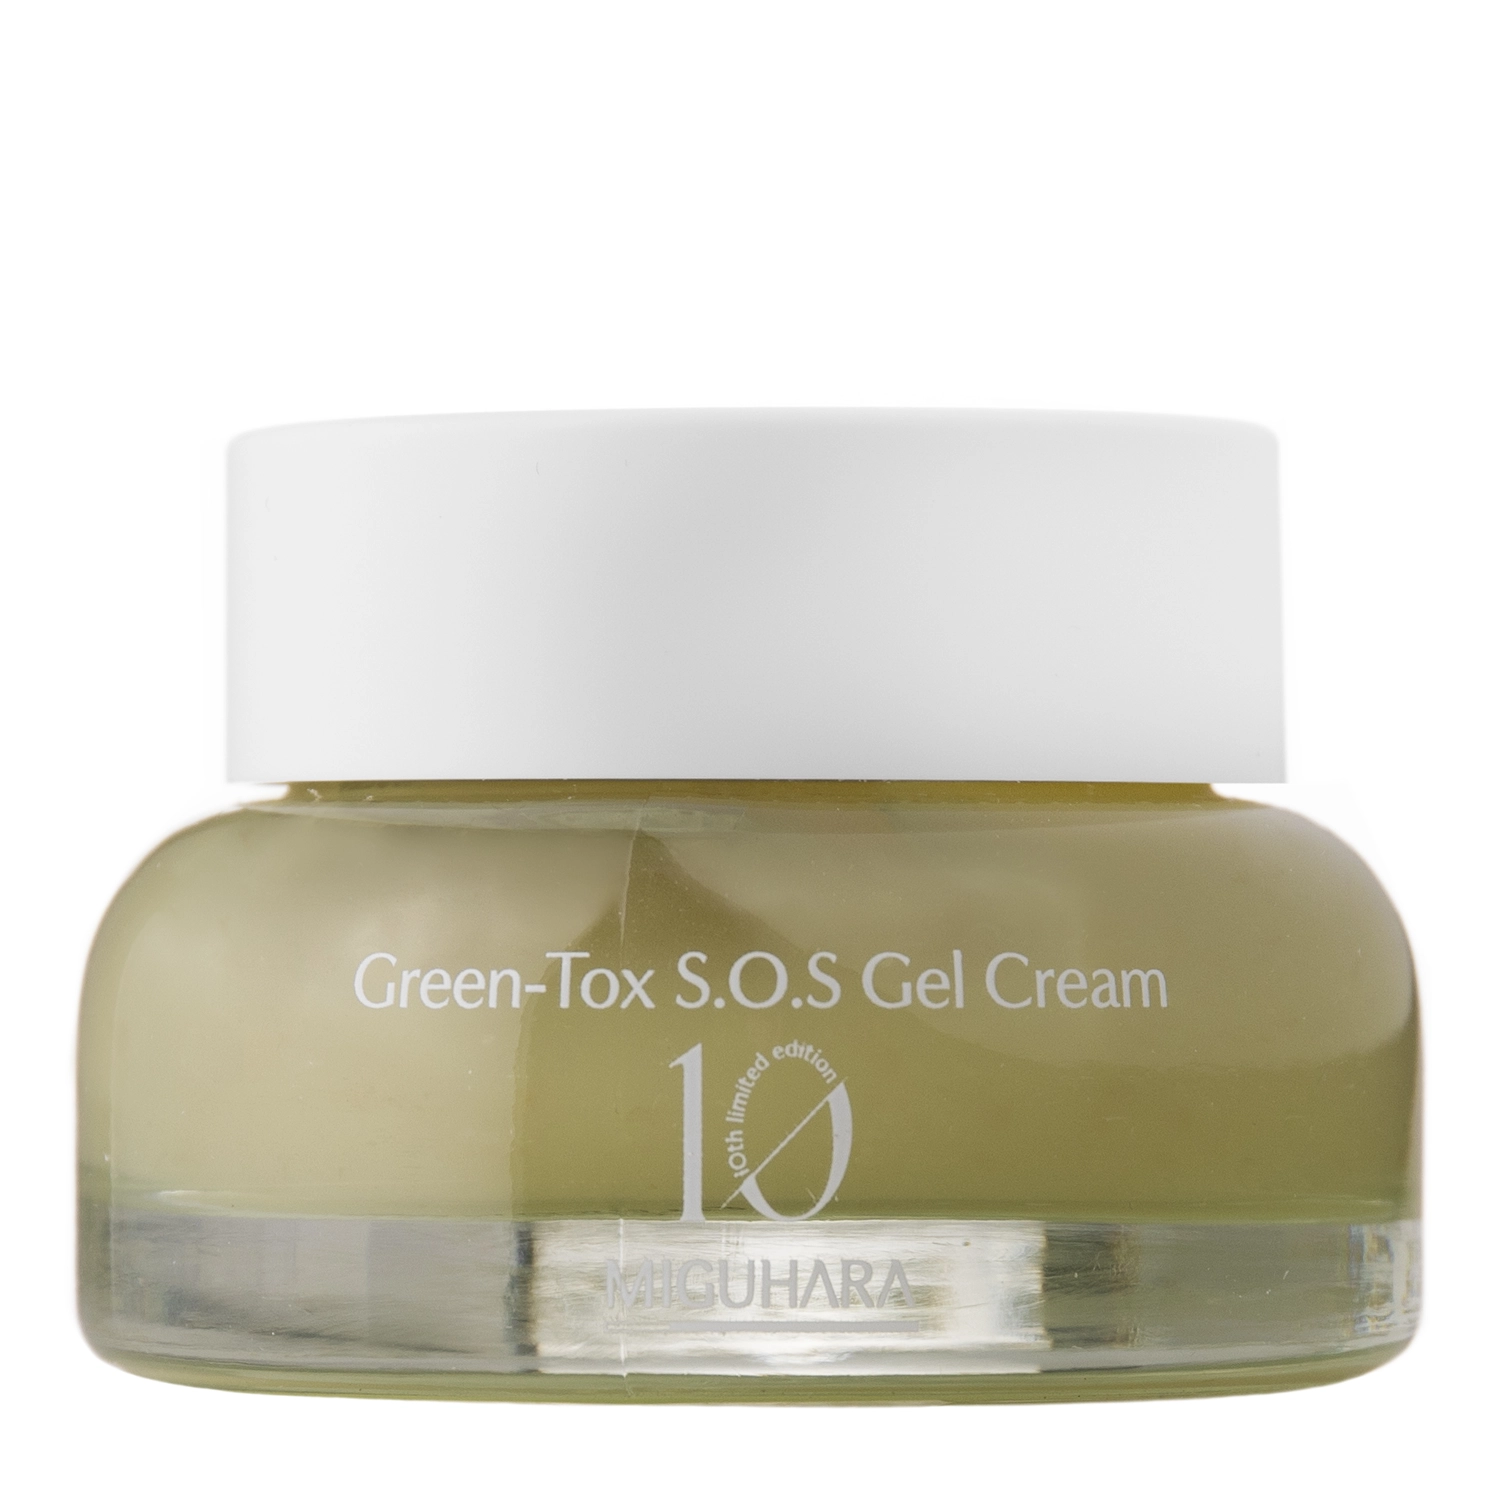 Miguhara - Green-Tox S.O.S Gel Cream - Крем-гель для лица с экстрактом зеленого чая - 50ml